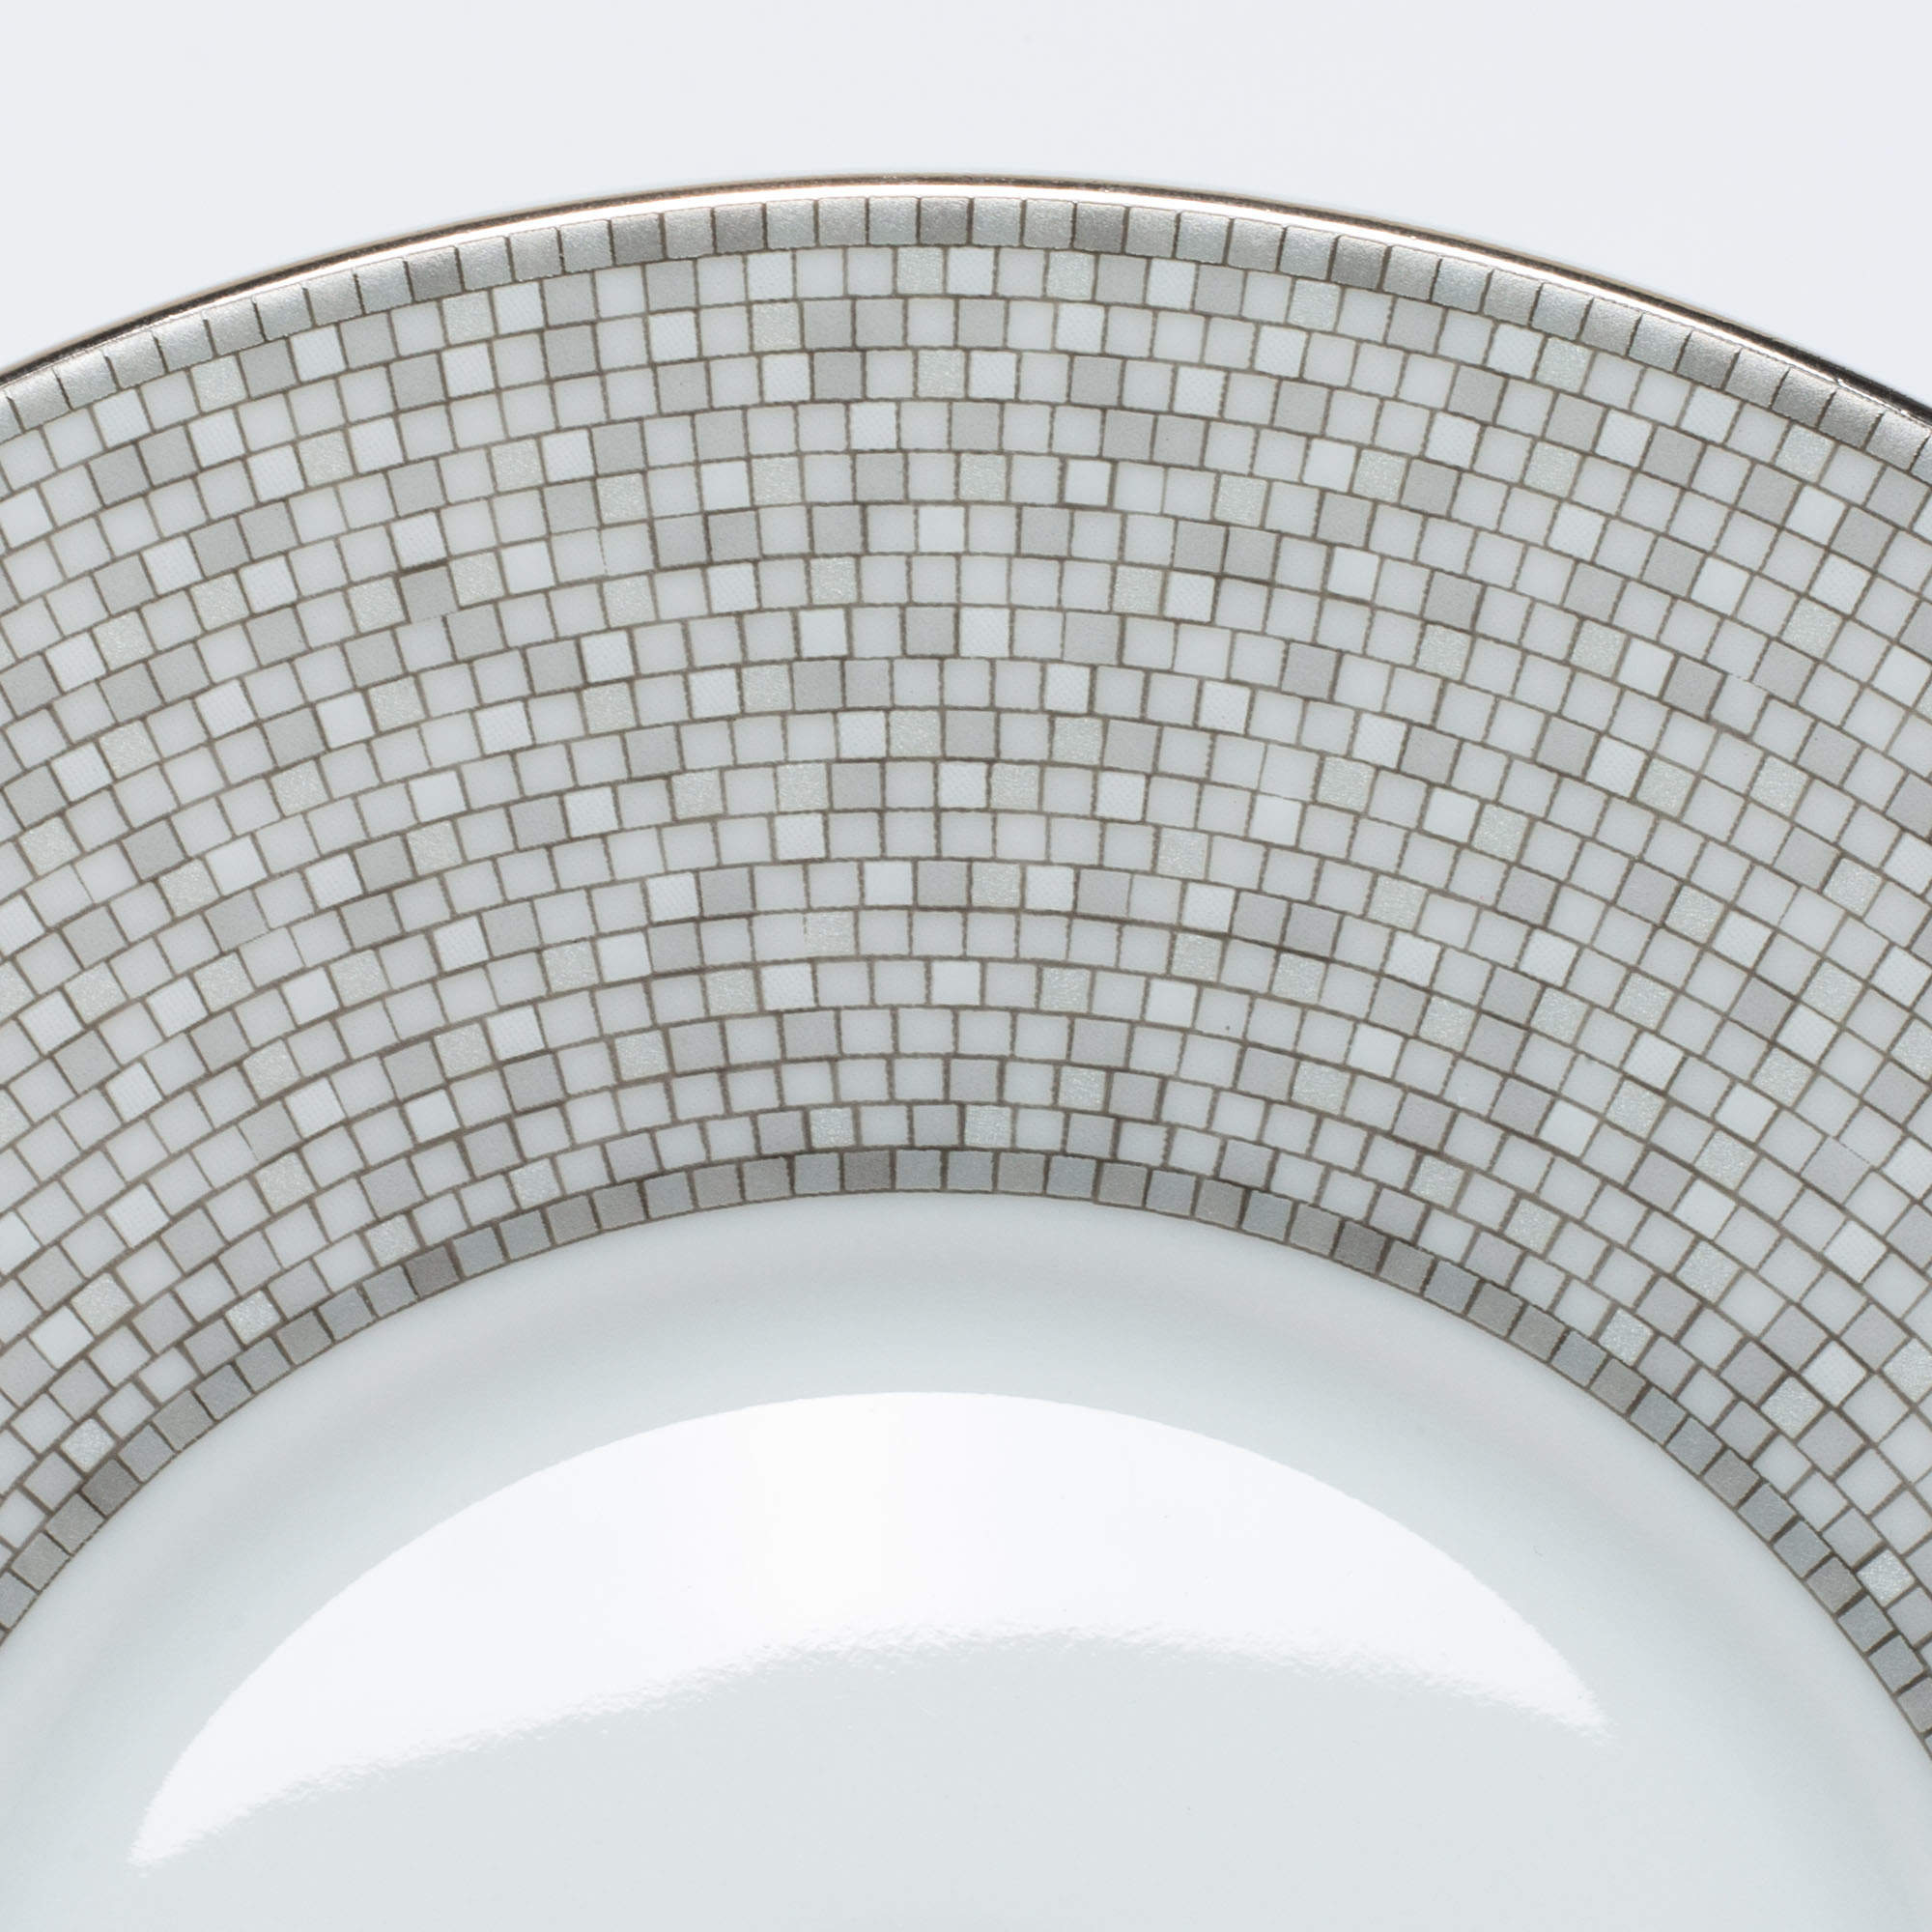 Hermes Classic Mosaique au 24 Platinum Teapot – MAISON de LUXE